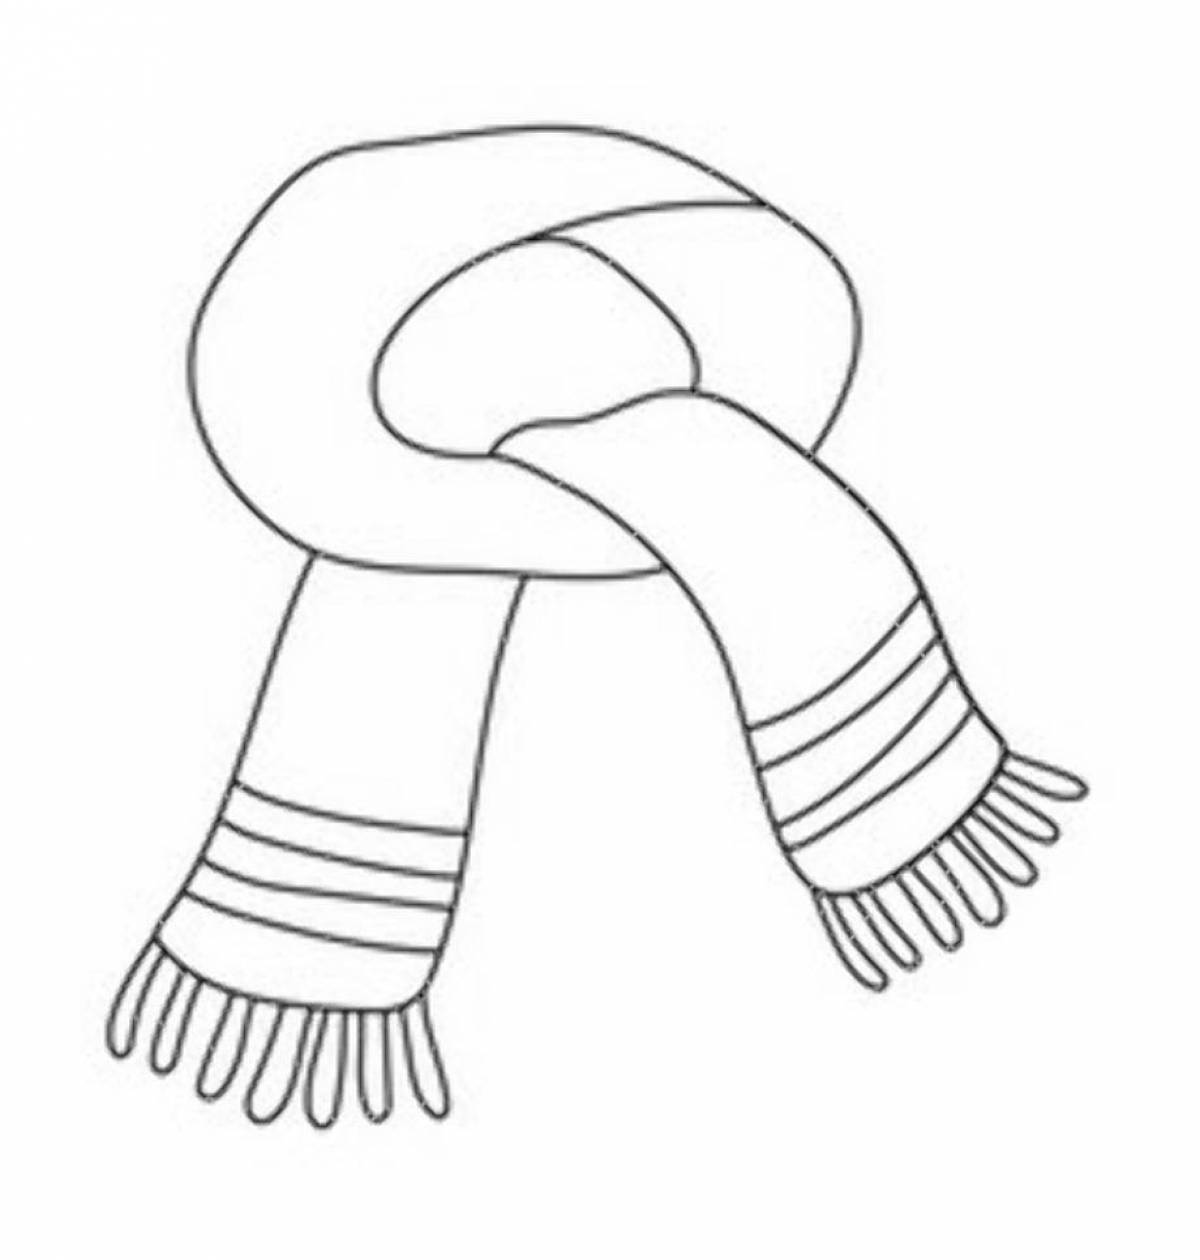 Увлекательная раскраска шарф для детей 3-4 лет